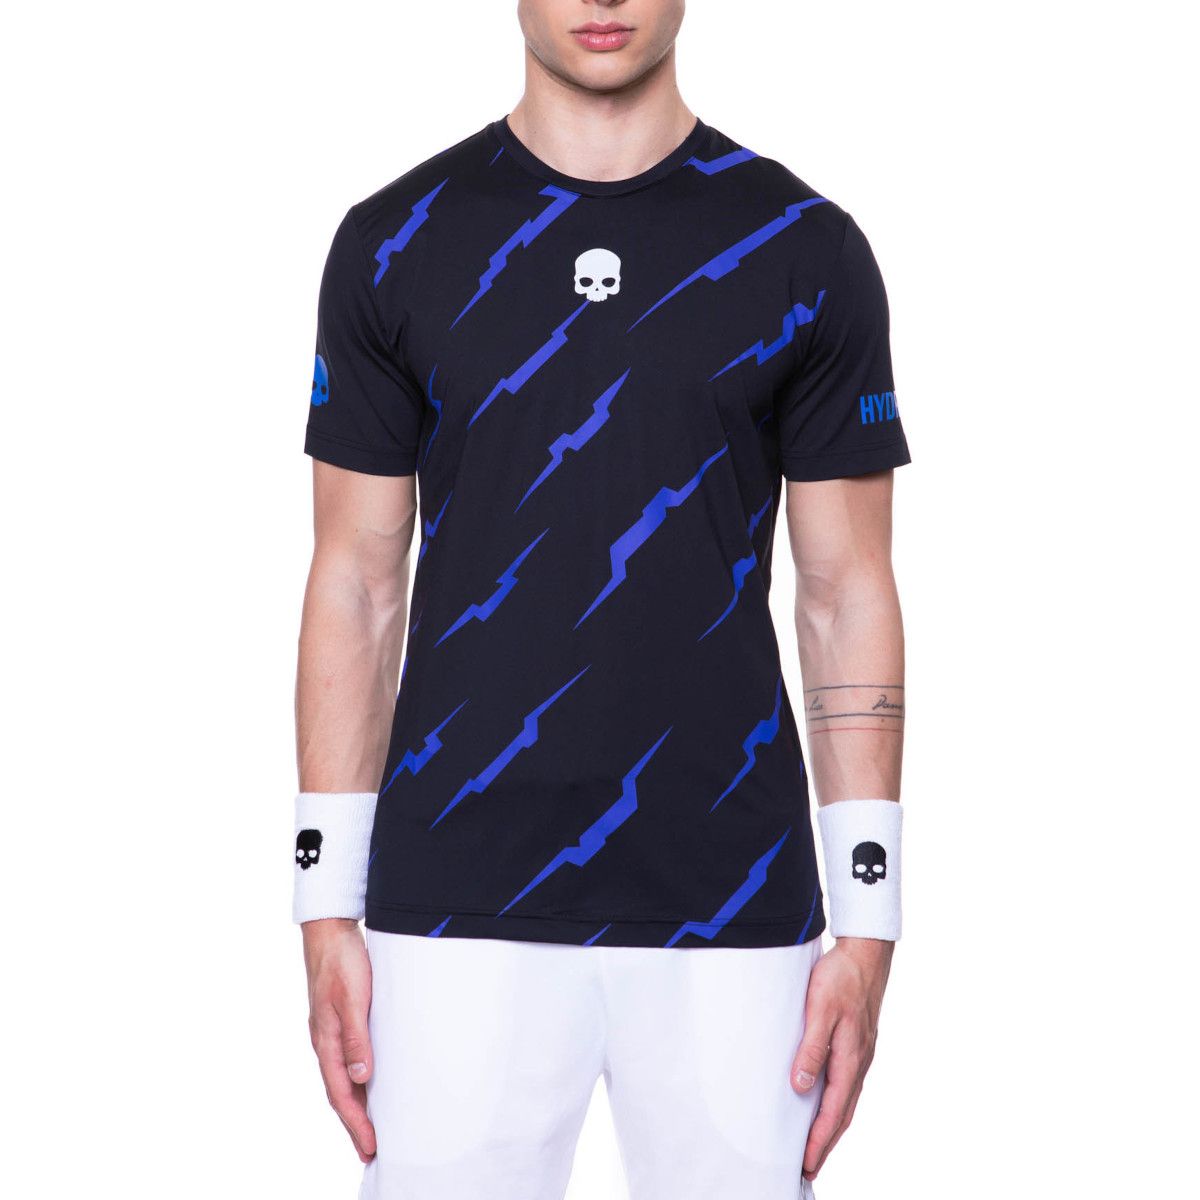 Hydrogen Thunder Tech Men's Tennis T-shirt T00400-A59